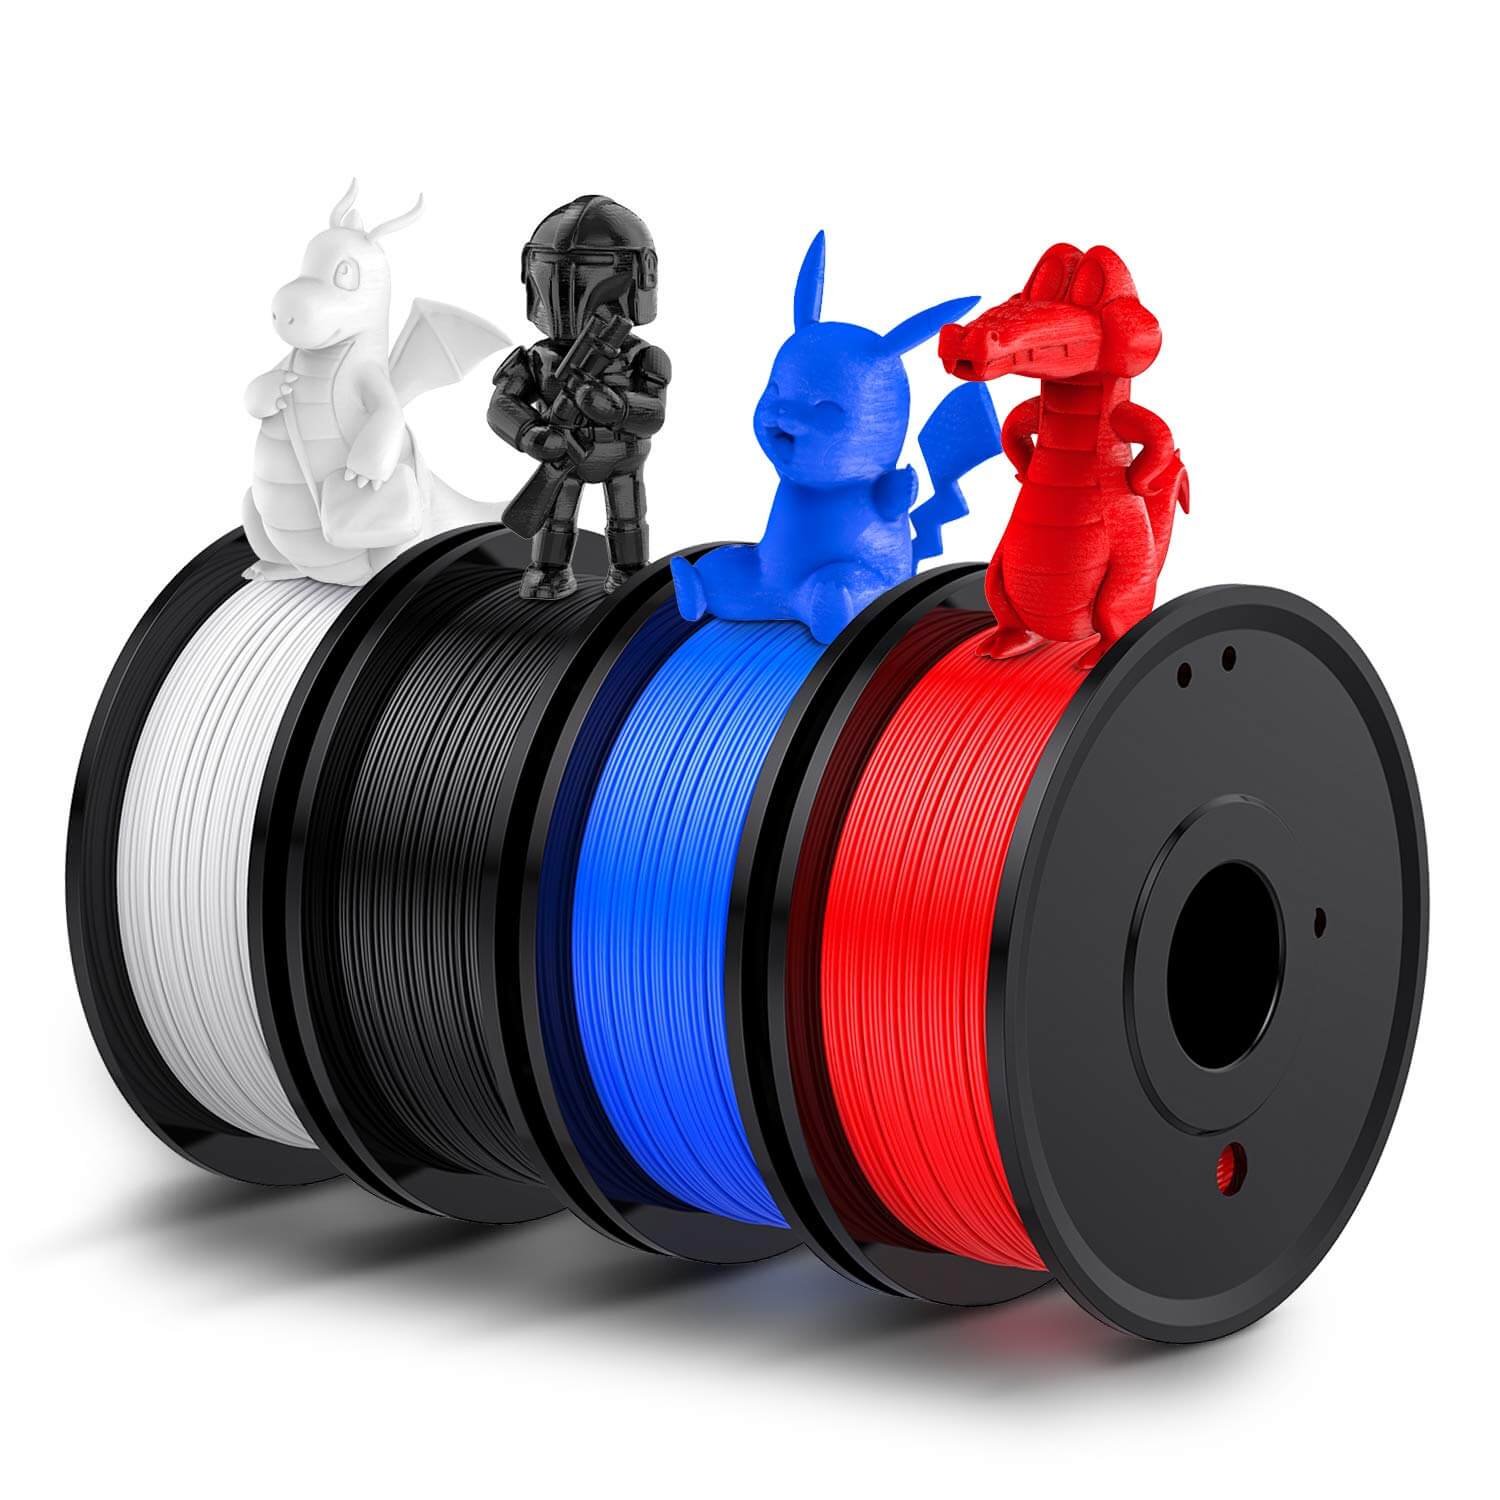 Anycubic Filament PLA+: Matériau d'impression 3D haute résistance –  ANYCUBIC-FR